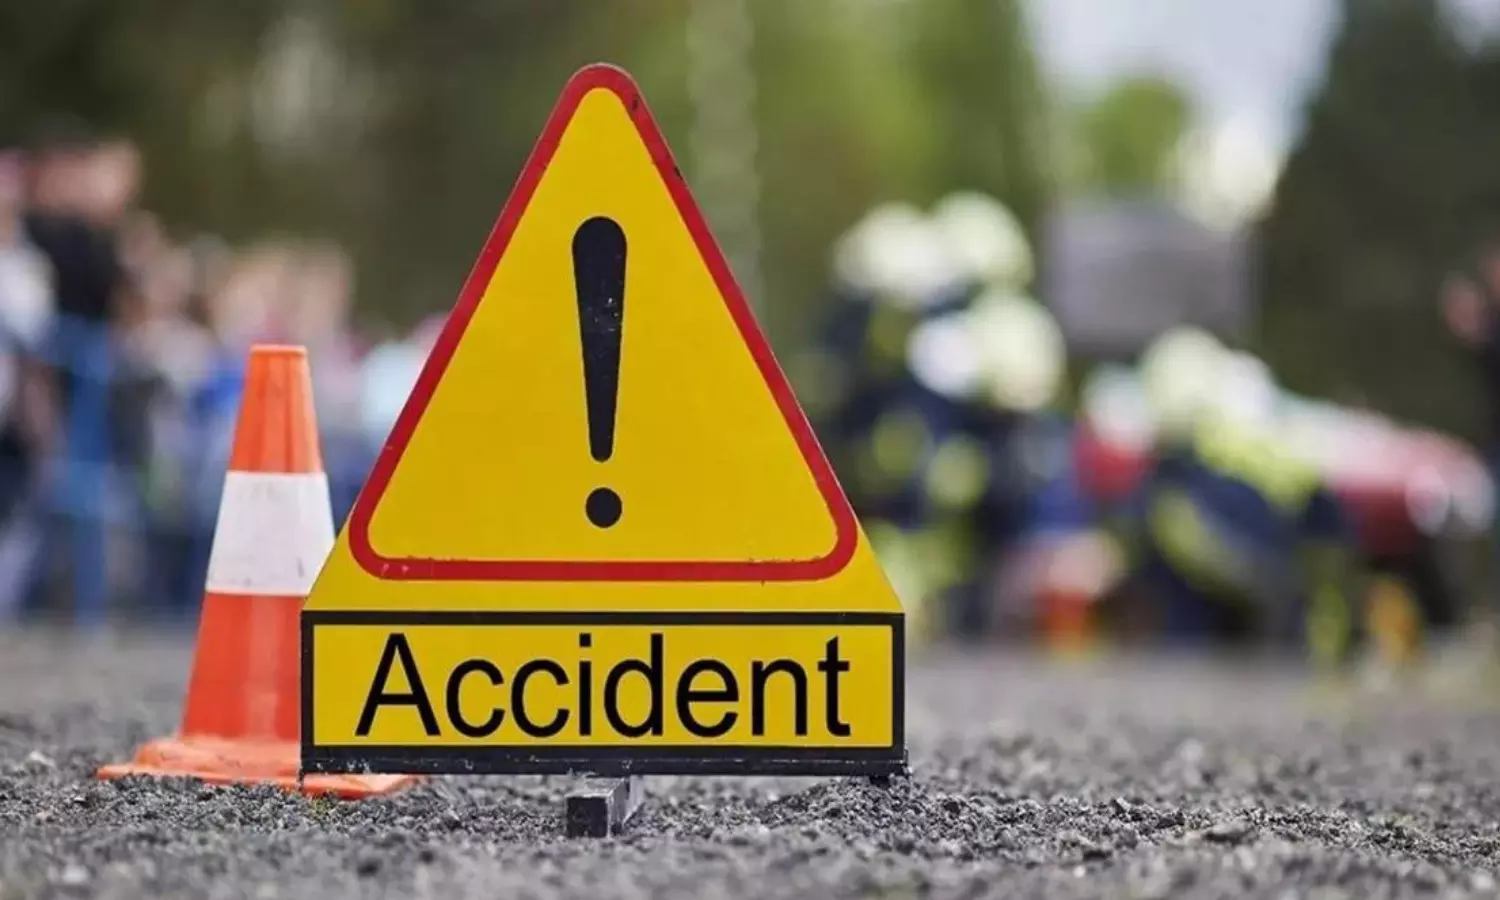 Chhattisgarh Kawardha Accident : पिकअप वाहन पलटने से 18 लोगों की मौत, PM Modi ने जताया दुःख